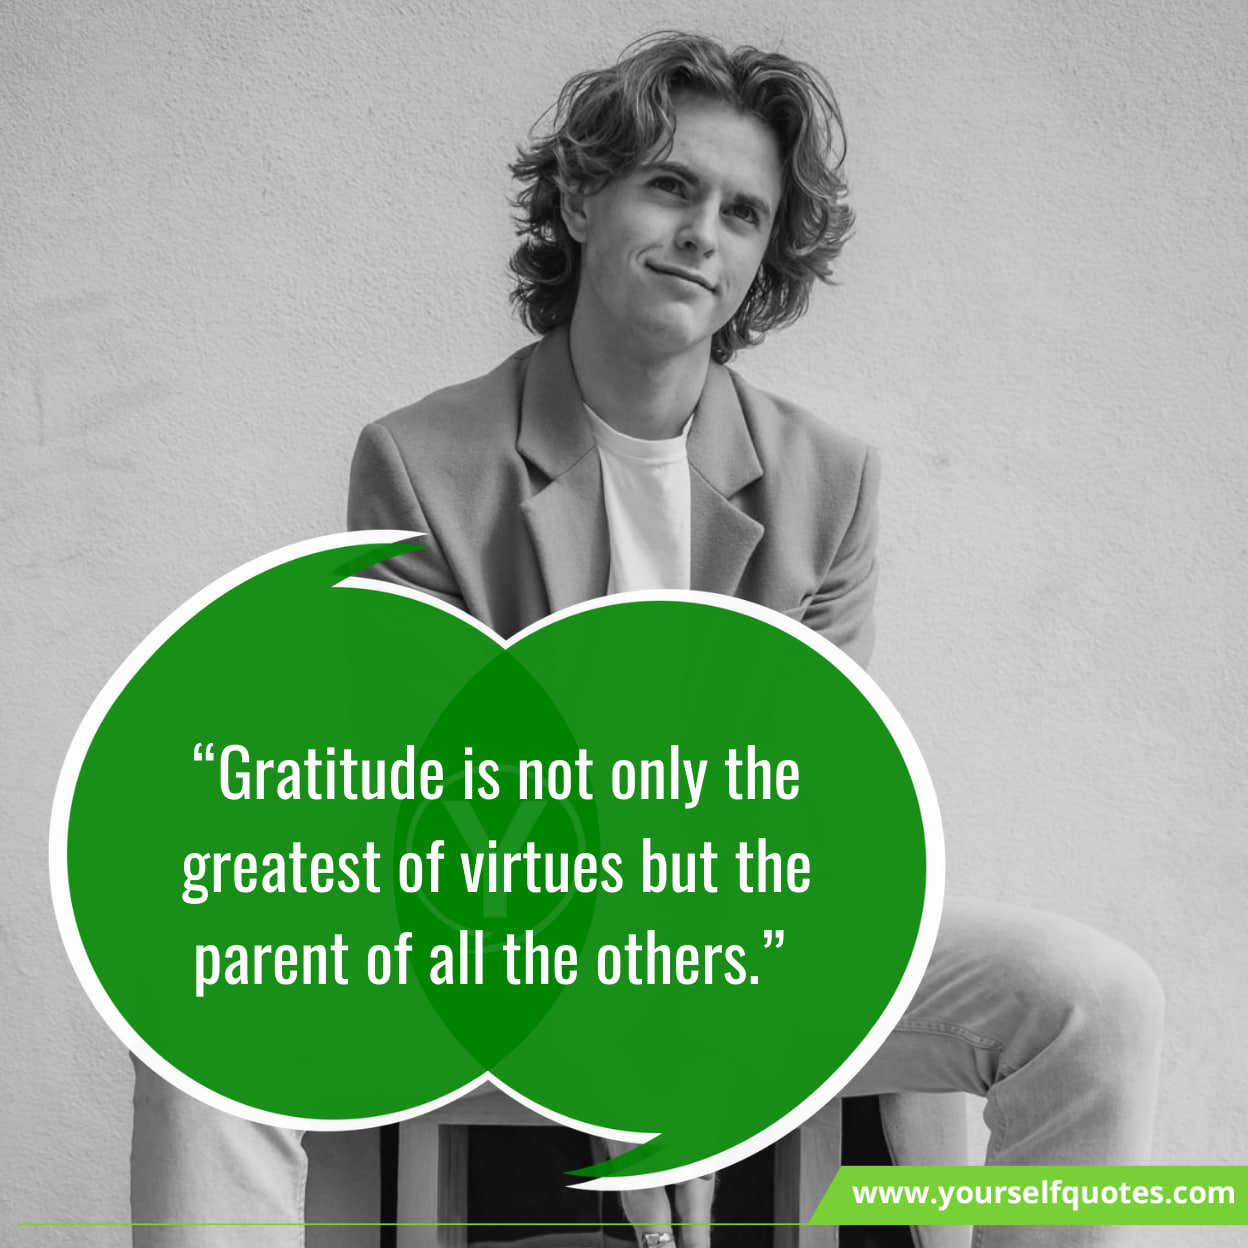 Monday Motivational Quotes About Gratitude